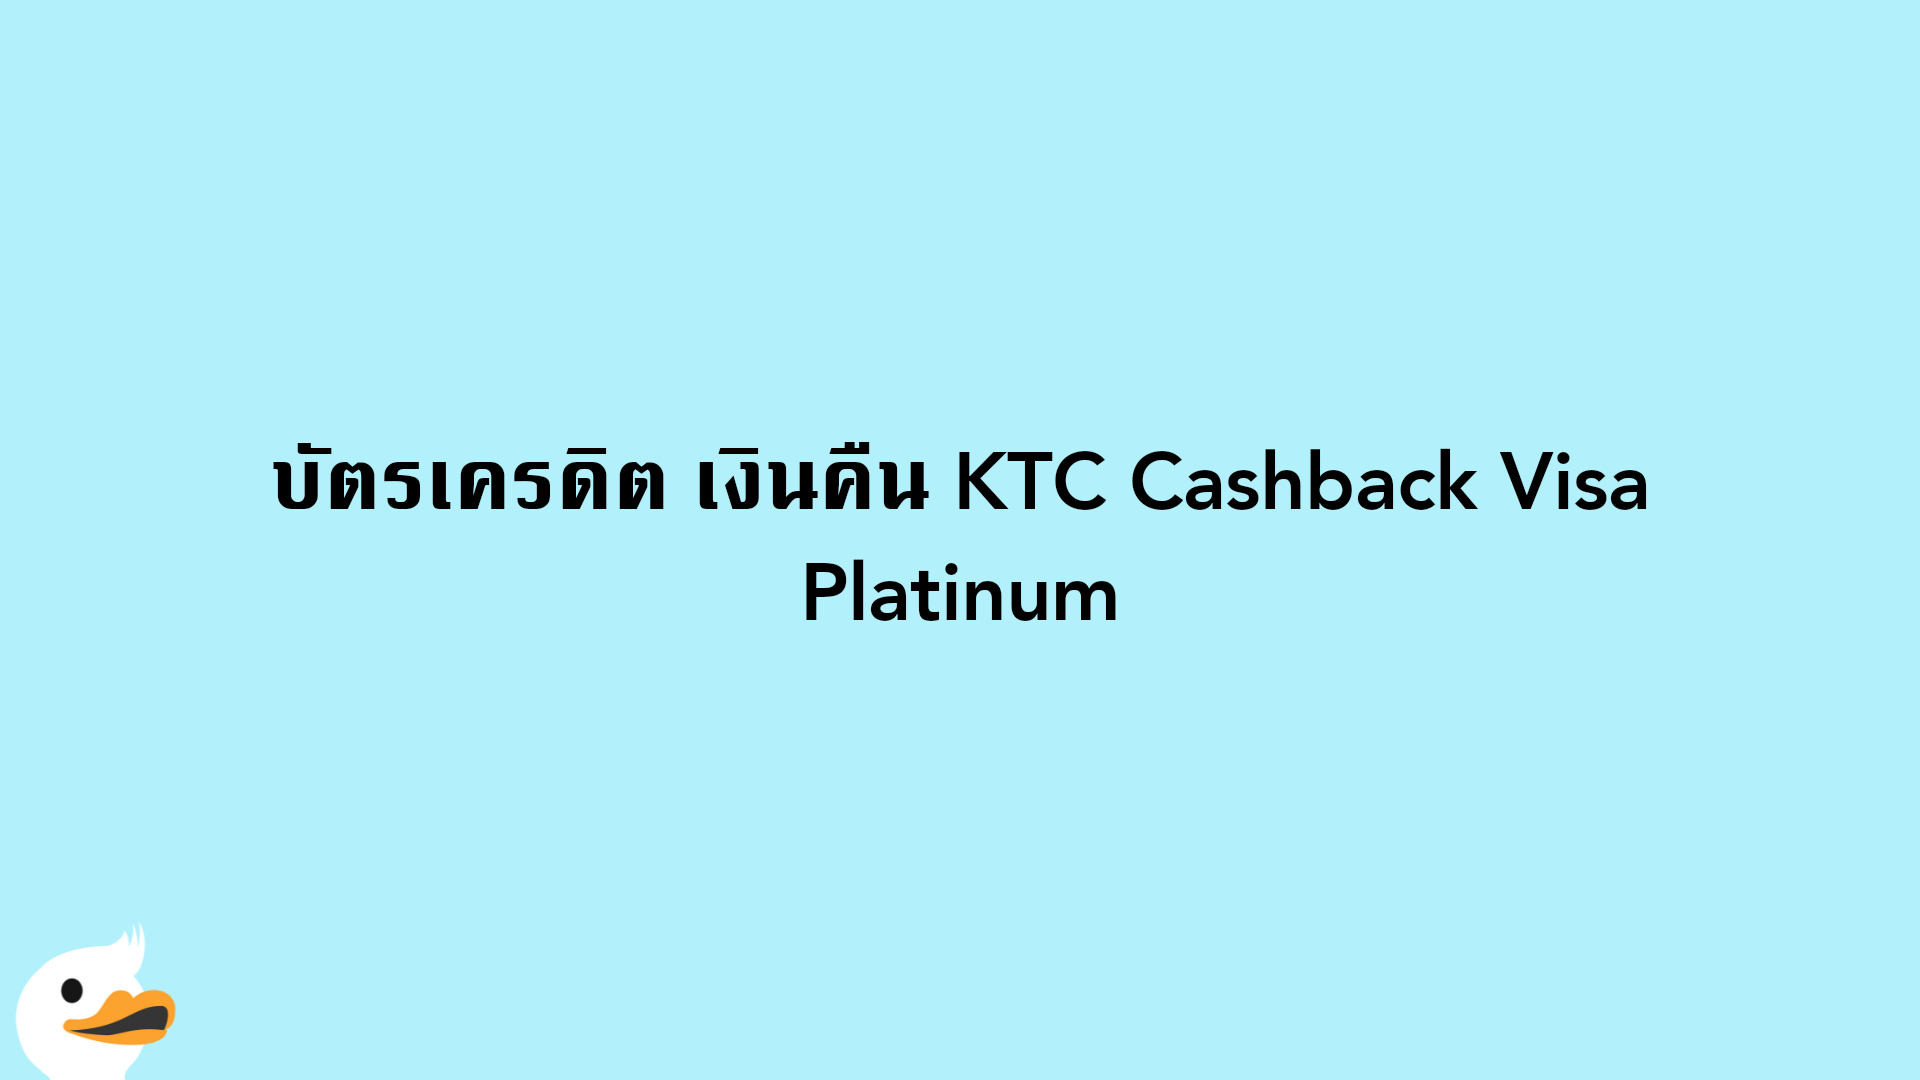 บัตรเครดิต เงินคืน KTC Cashback Visa Platinum